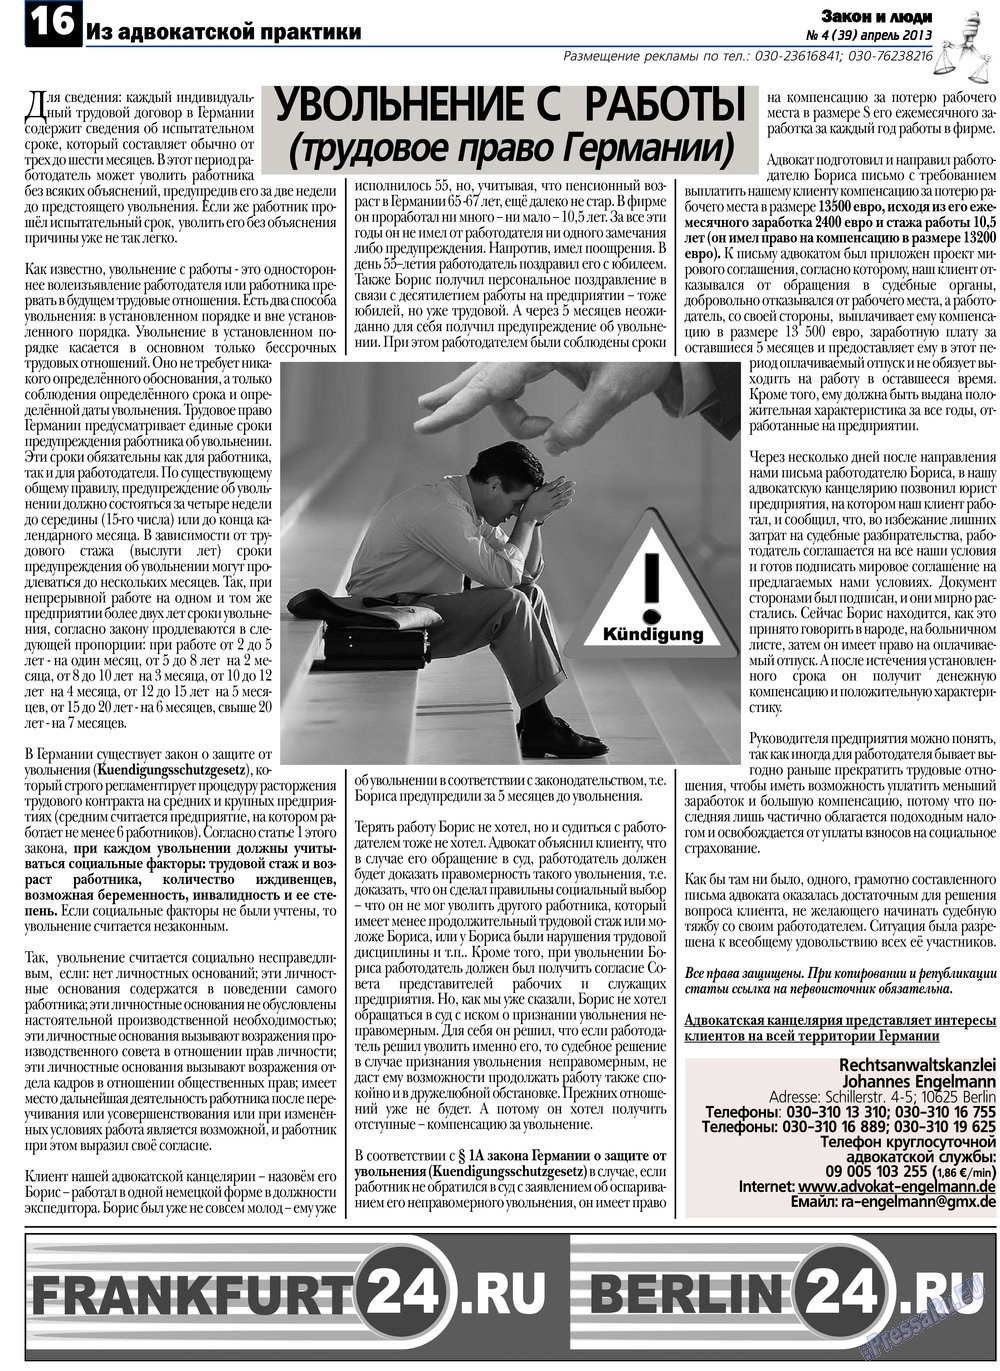 Закон и люди, газета. 2013 №4 стр.16